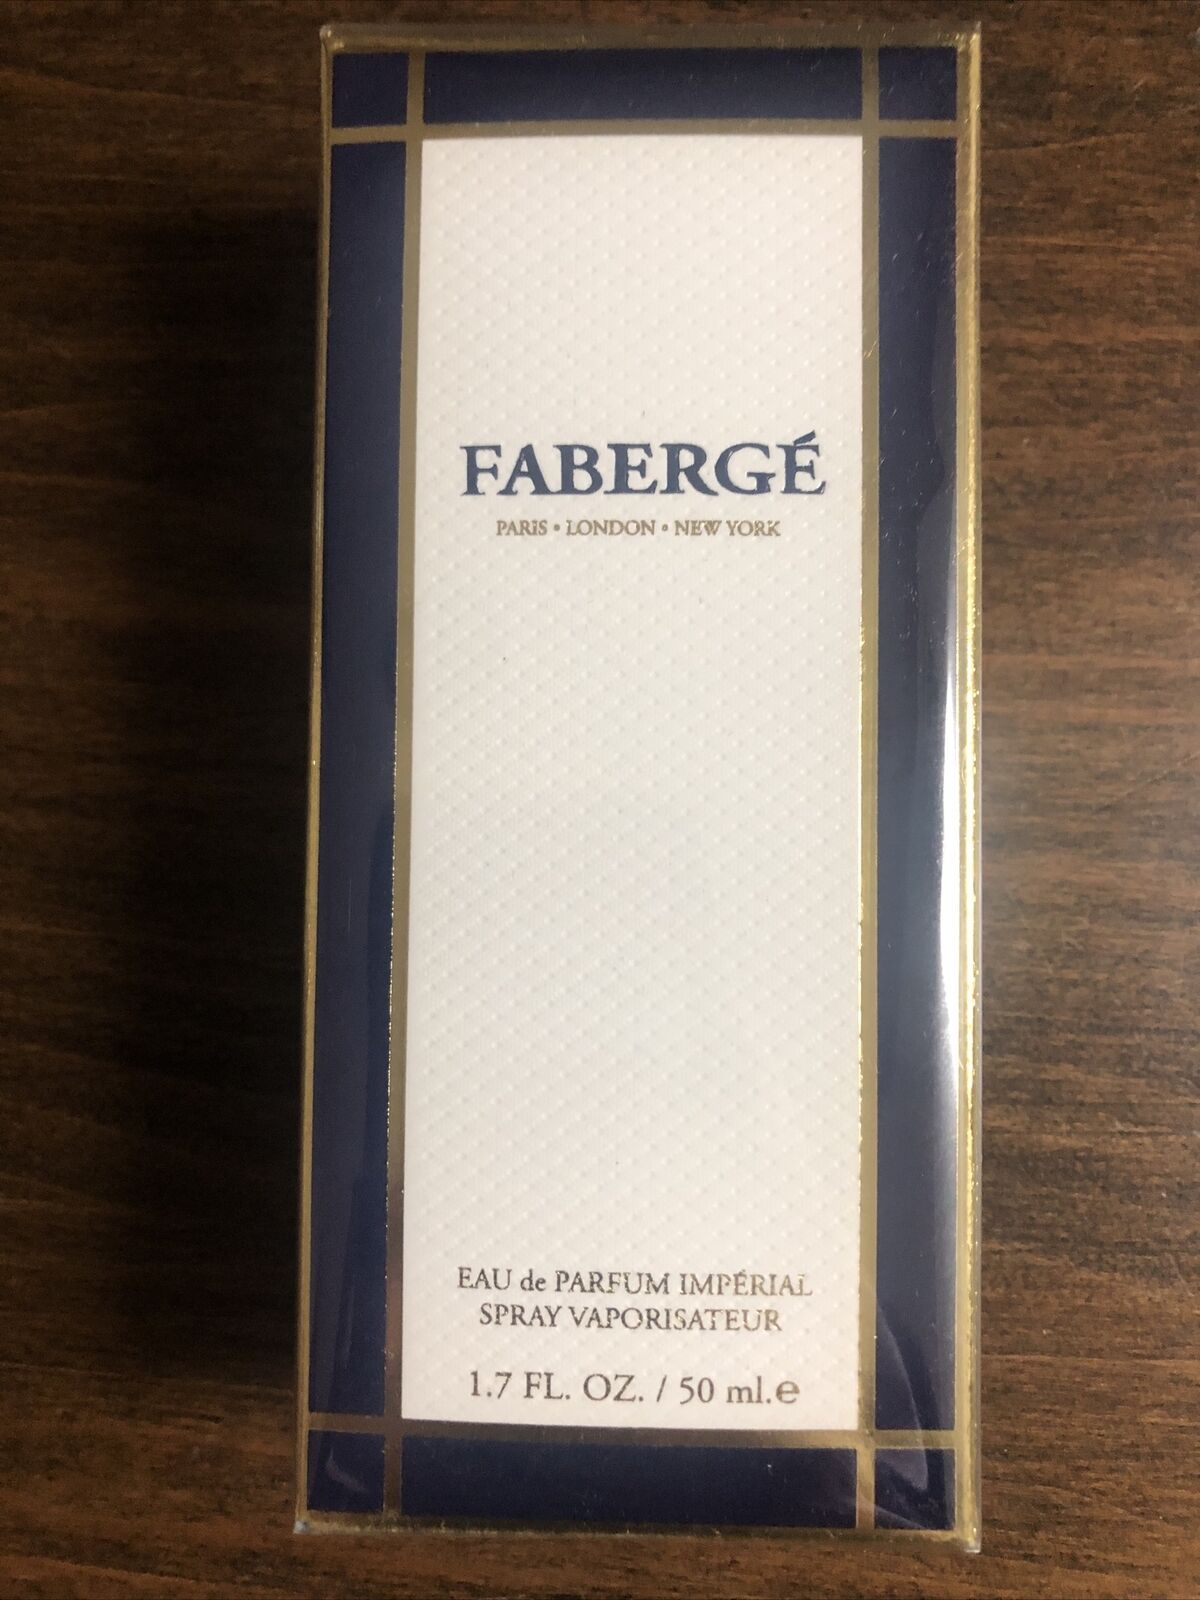 Rare vintage faberge eau de parfume imperial 1.7 fl oz, new, sealed